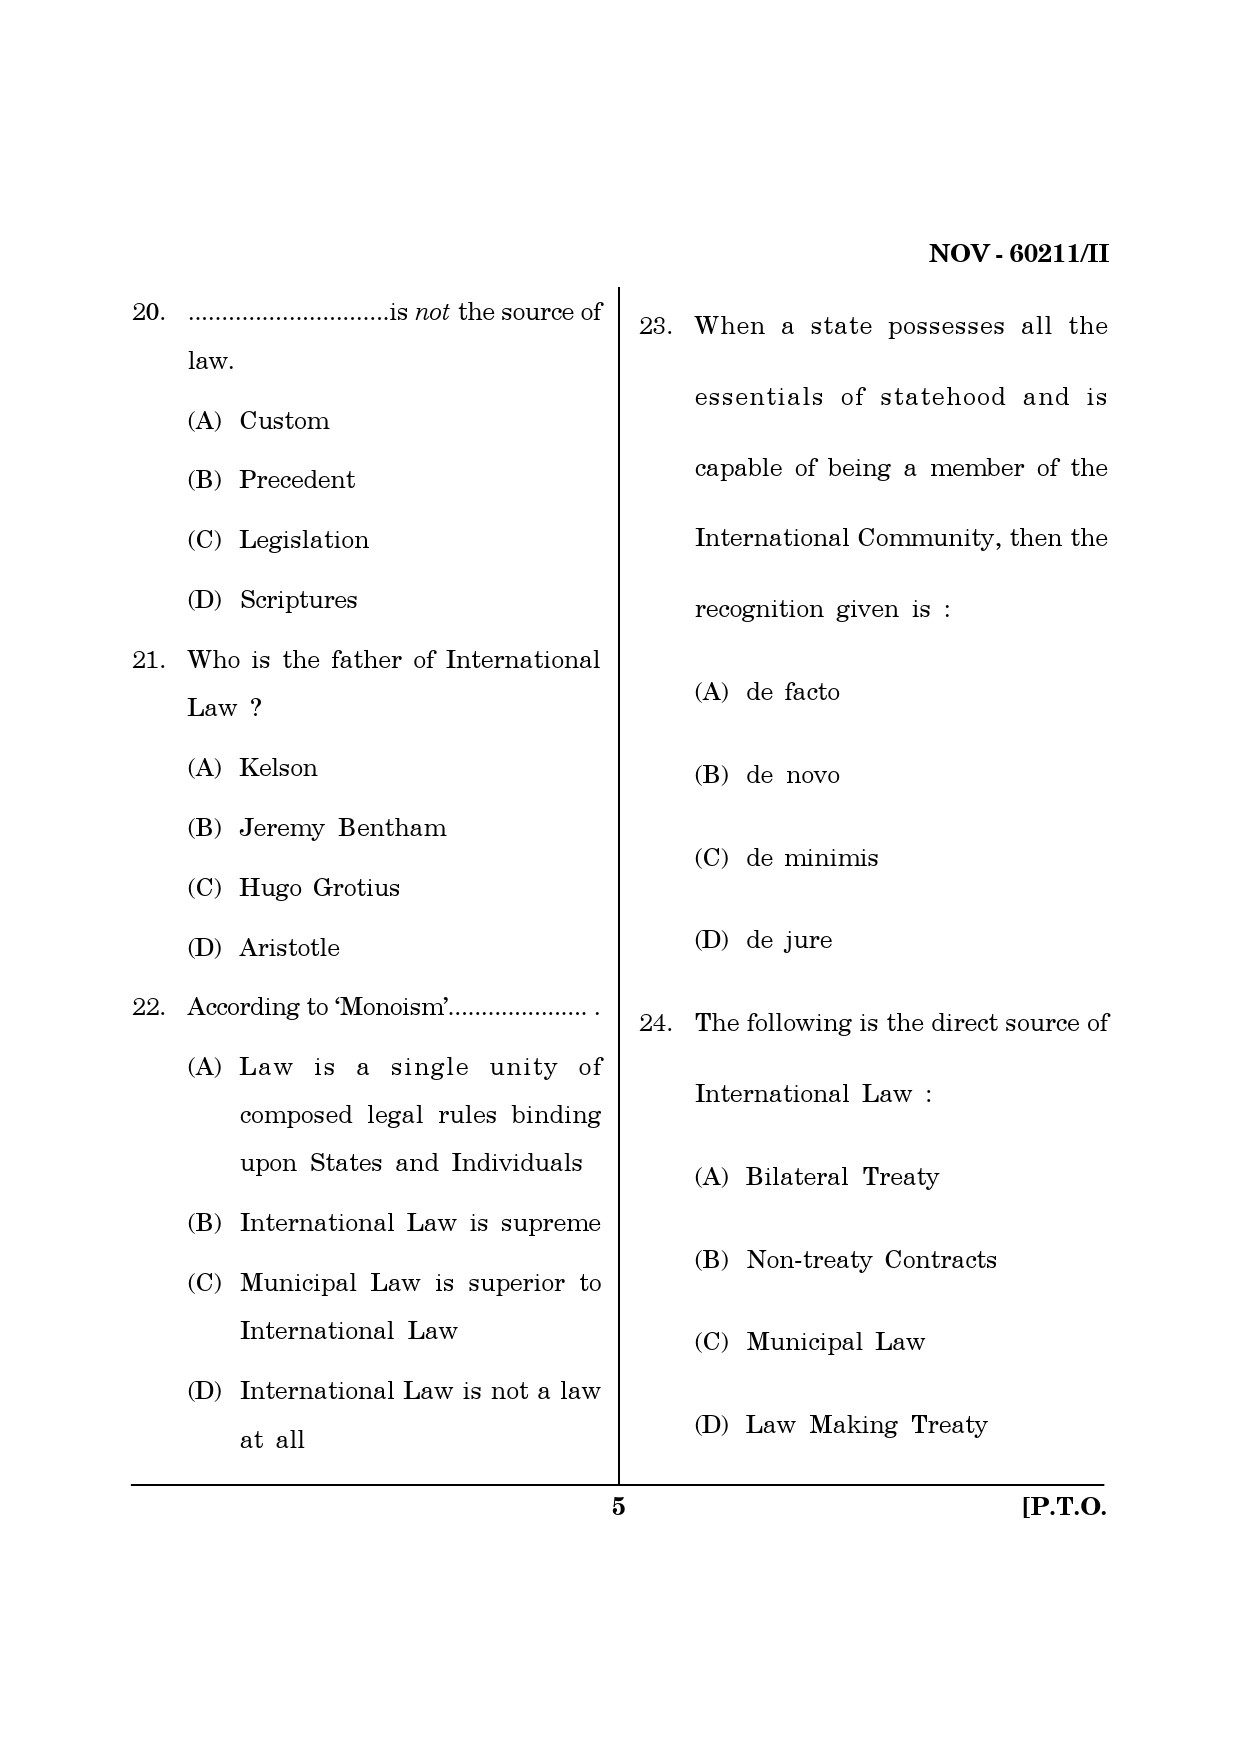 Maharashtra SET Law Question Paper II November 2011 5